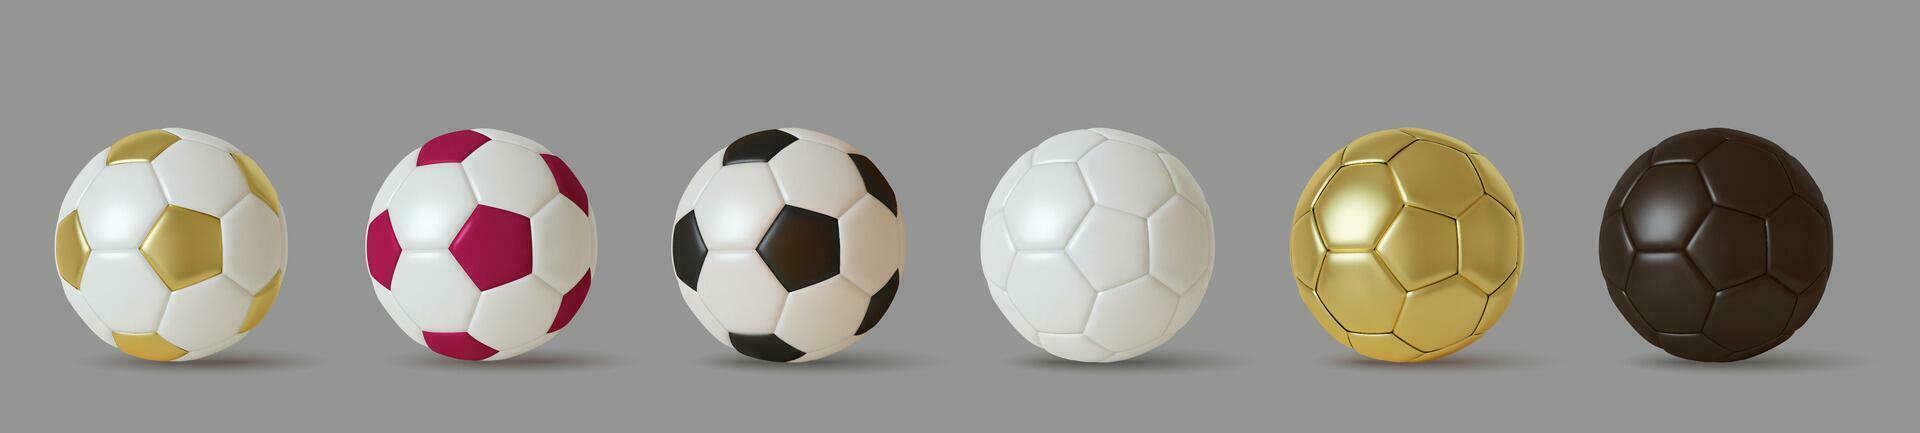 Sammlung von 3d realistisch Fußball Bälle. einstellen von golden, violett und Weiß schwarz Farbe Fußball Bälle. Vektor Illustration.